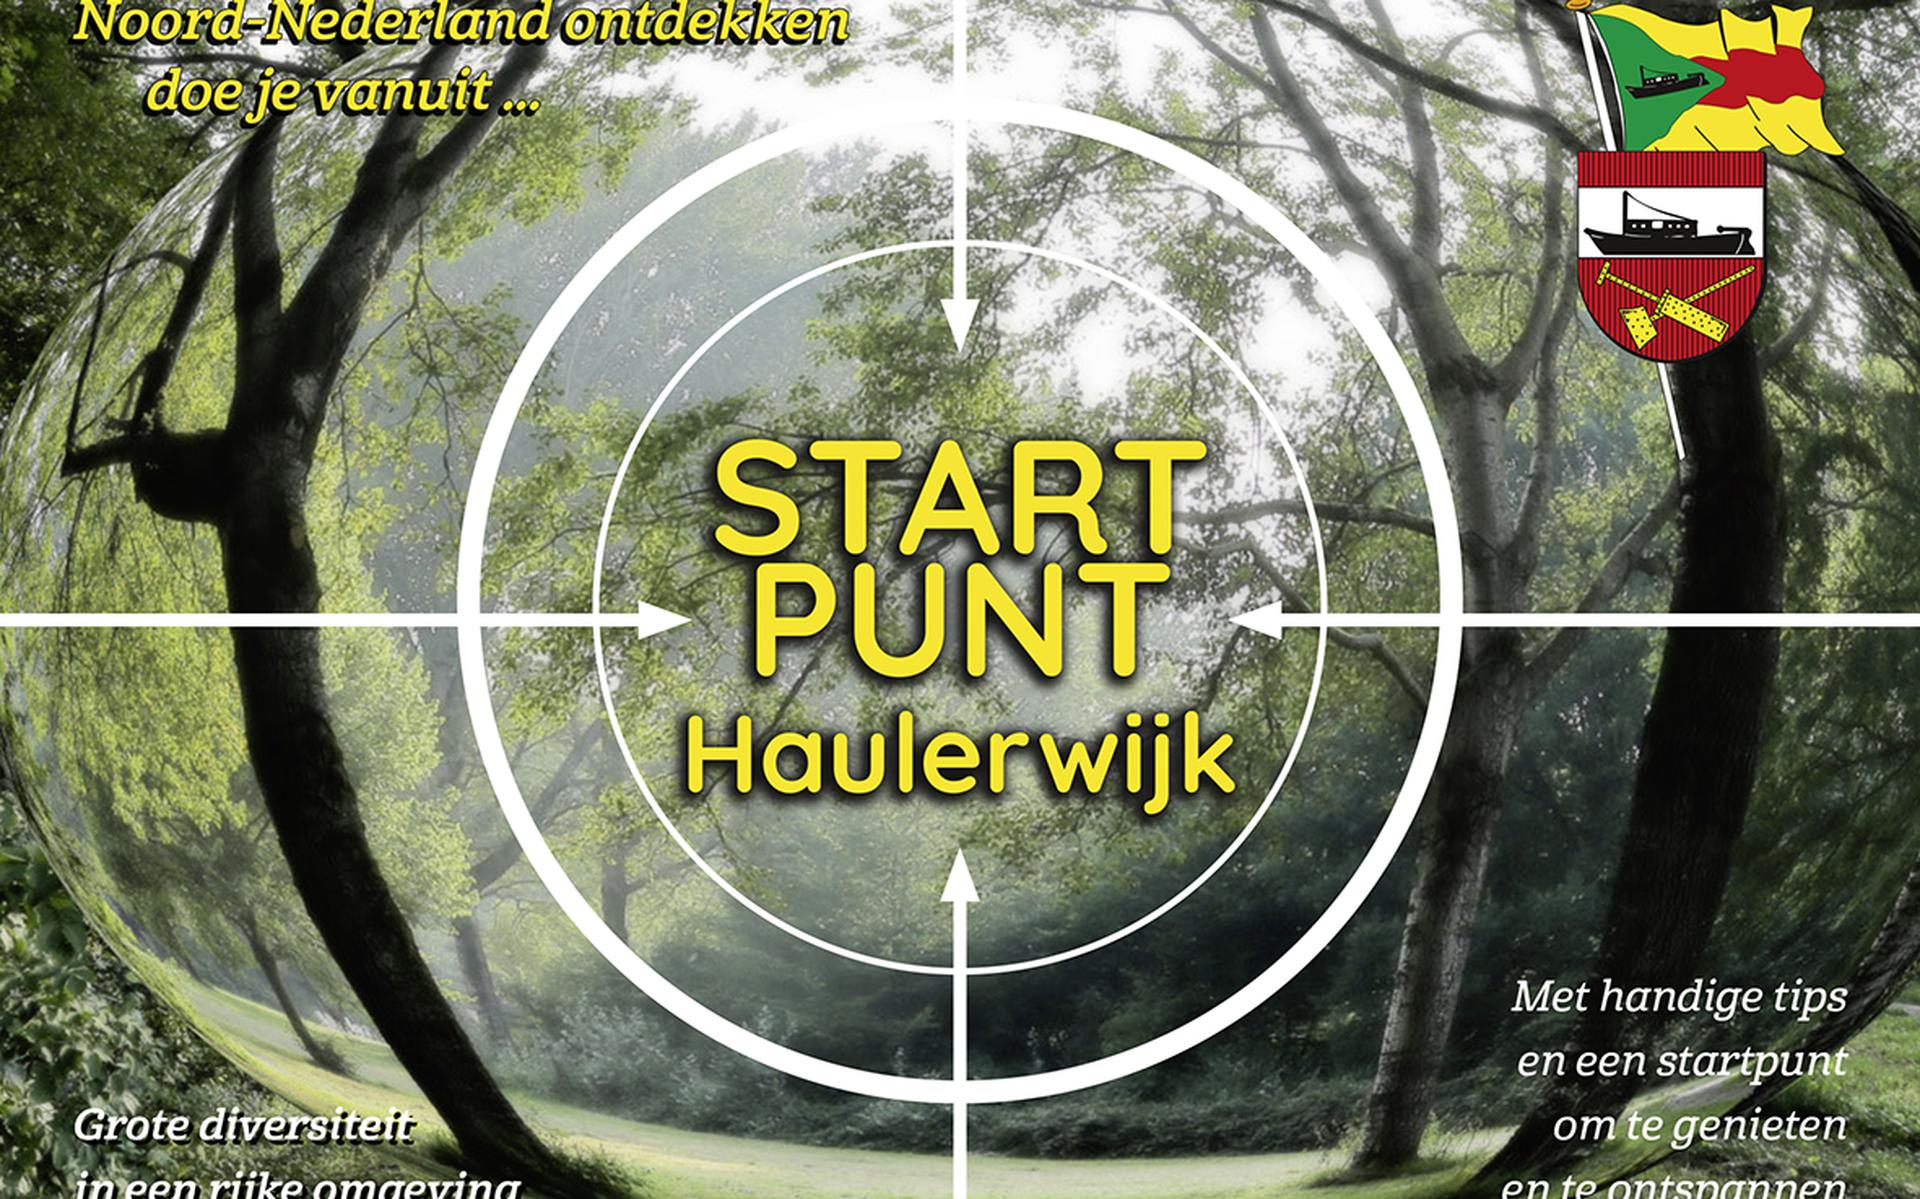 Haulerwijk heeft een eigen promotieboekje.